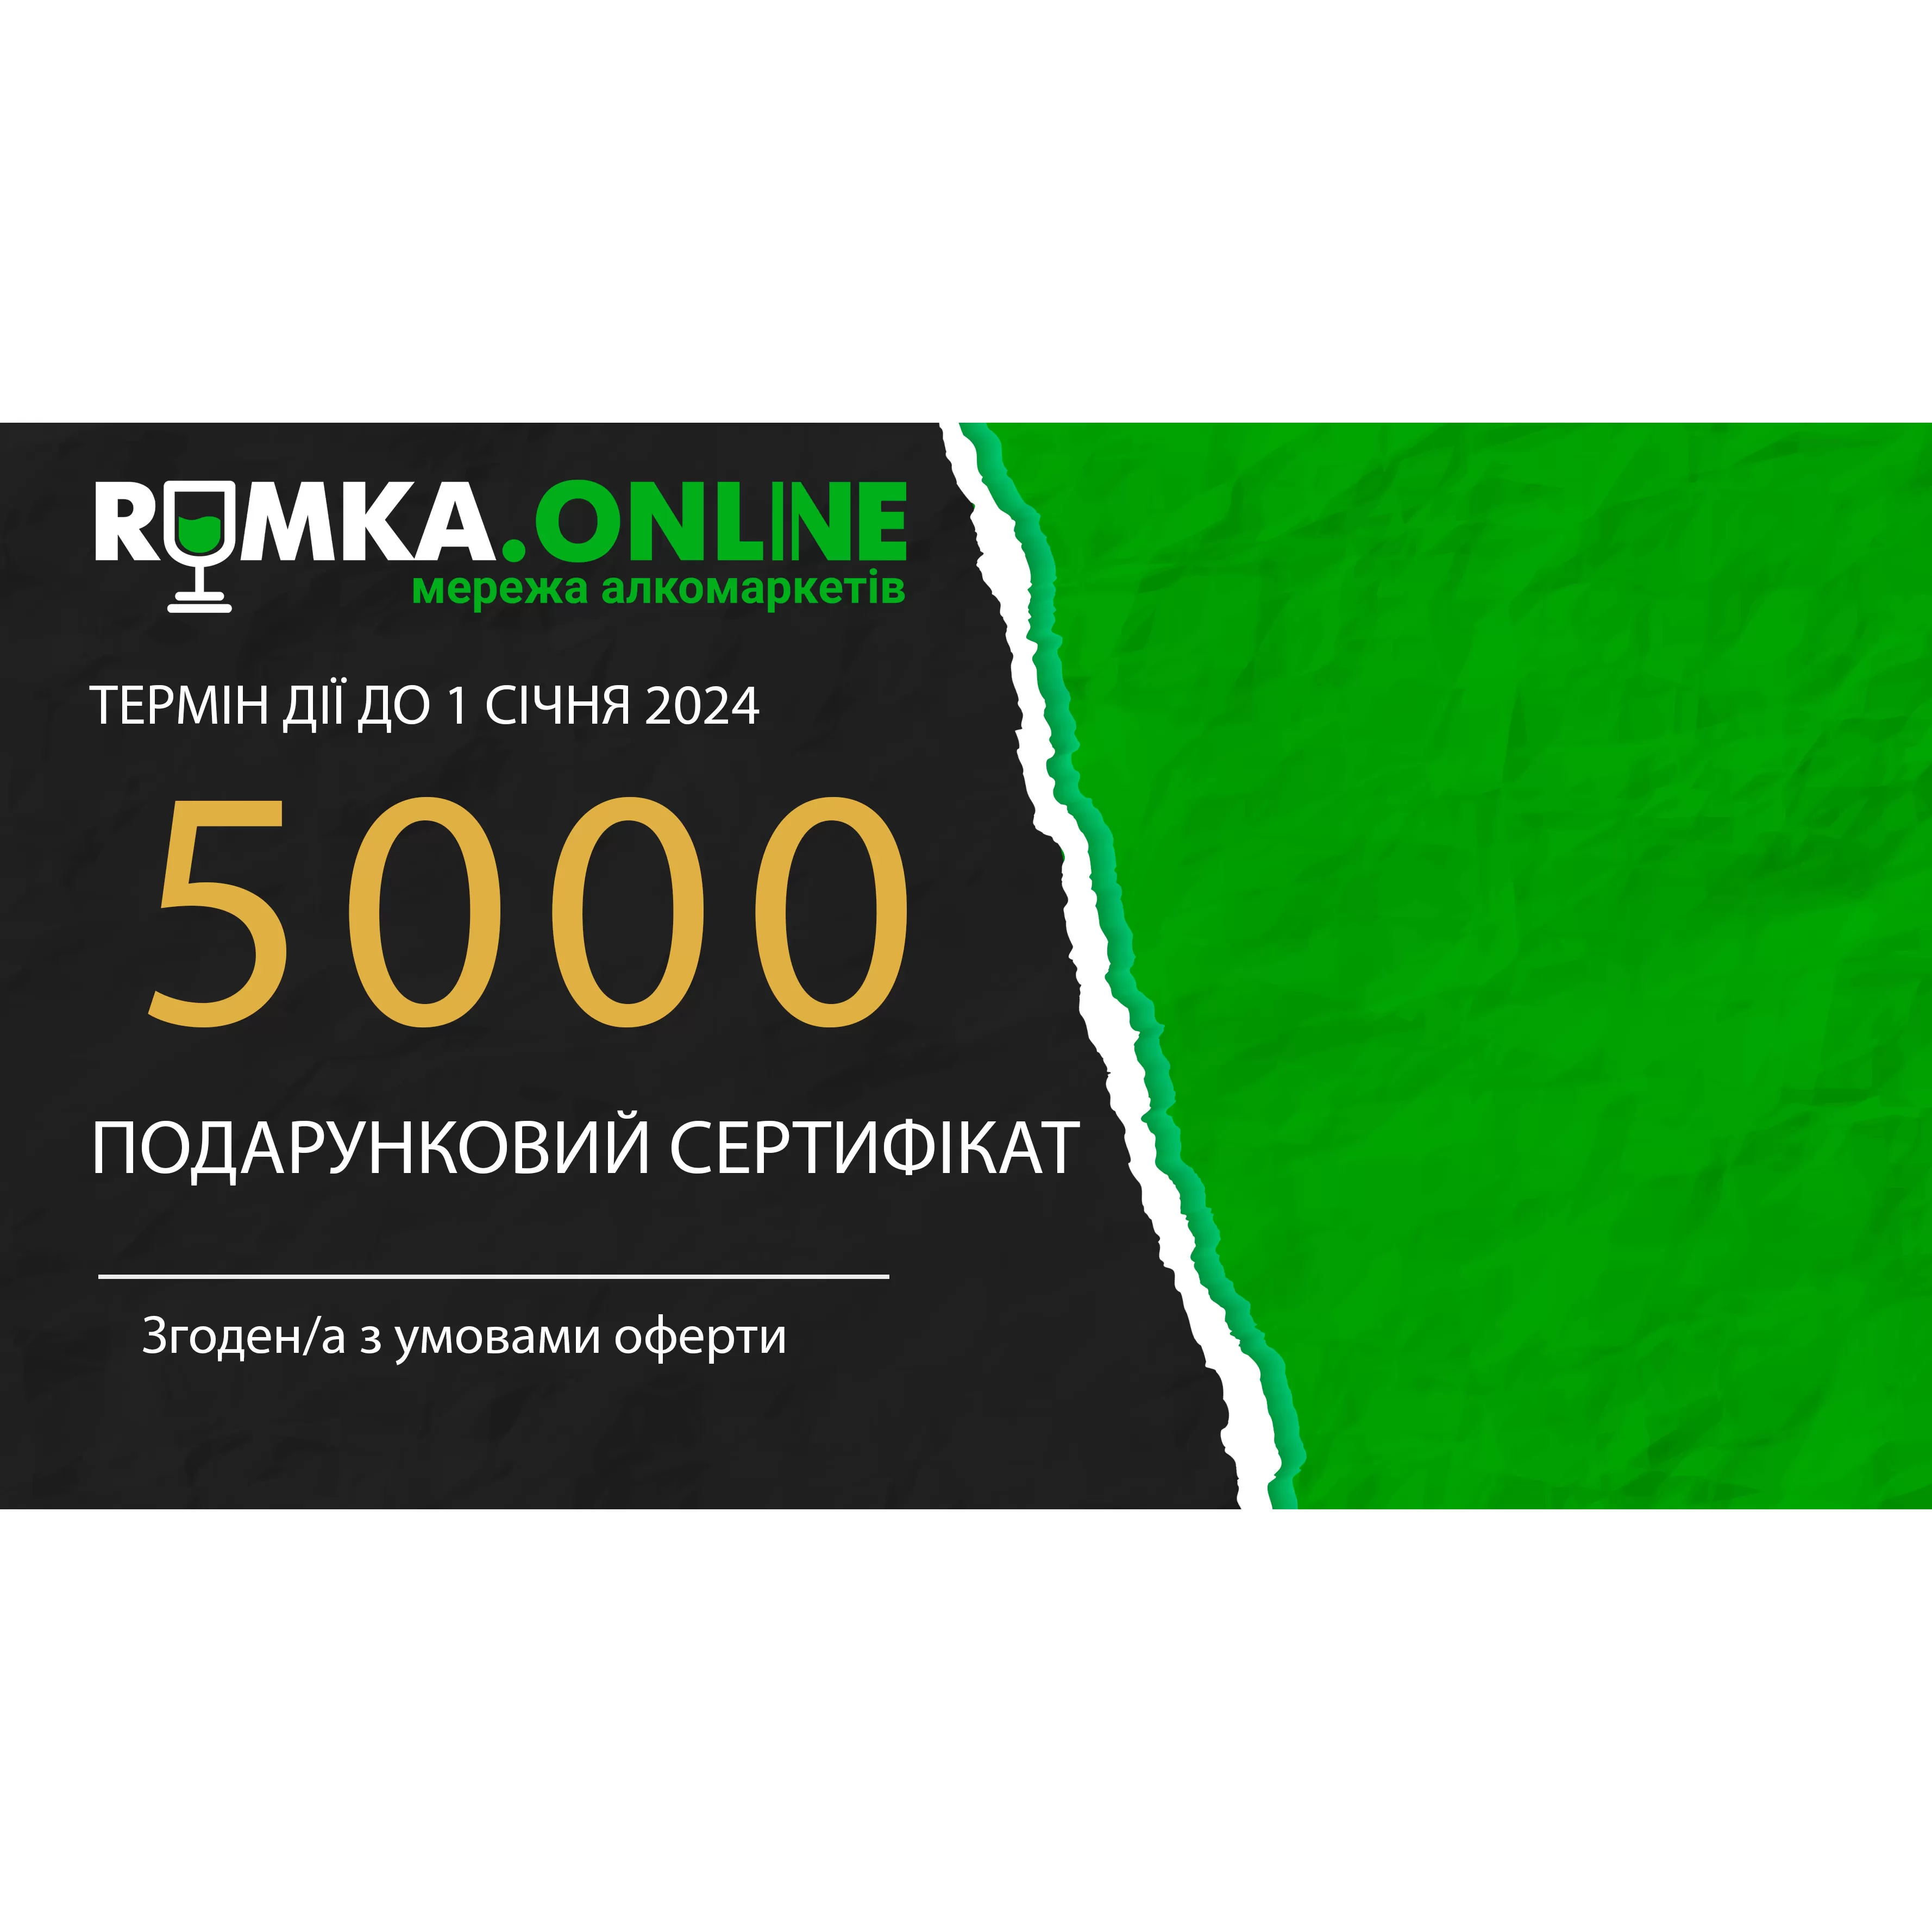 Подарочный сертификат 5000 грн